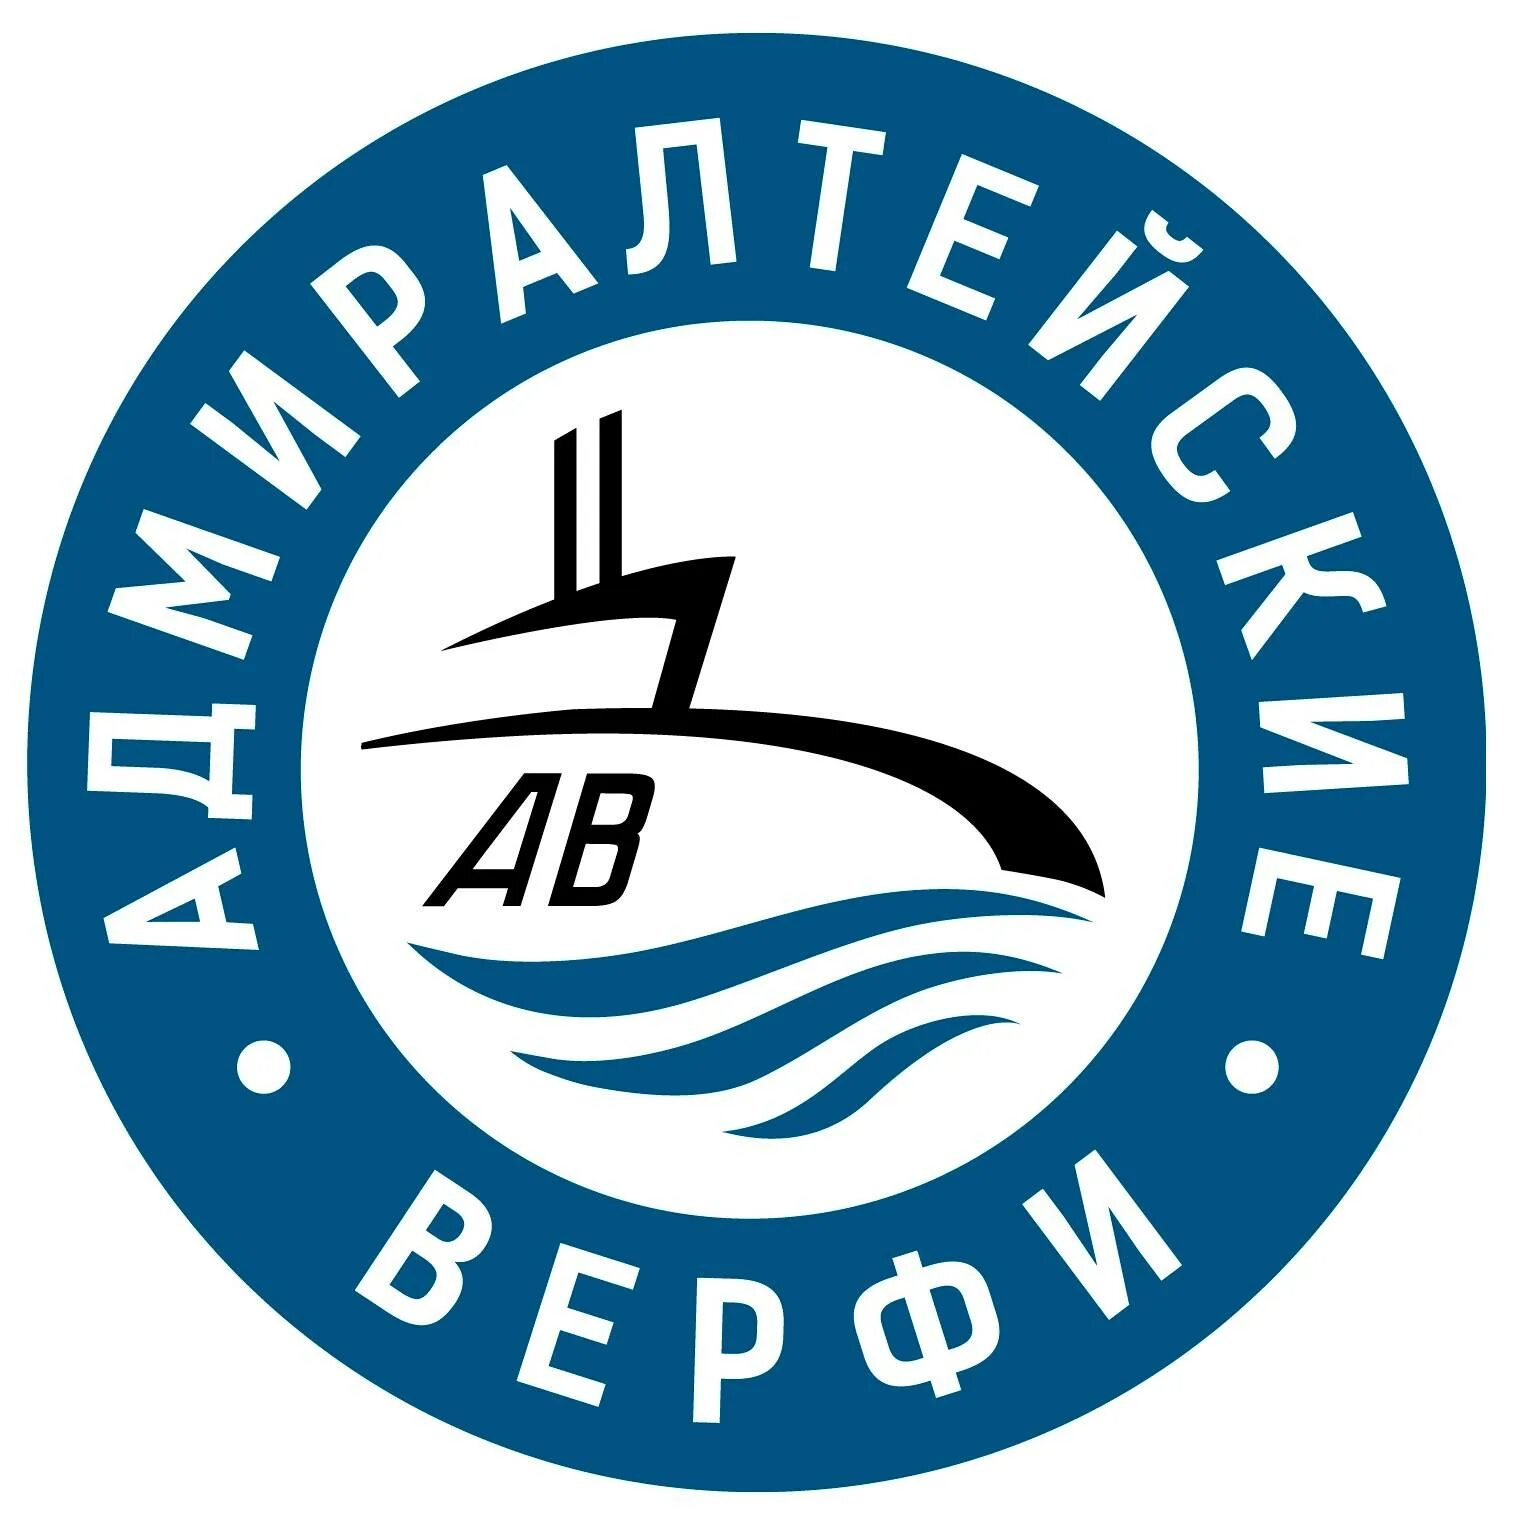 Завод Адмиралтейские верфи Санкт-Петербург. Адмиралтейские верфи Санкт-Петербург логотип. Судостроительная компания Адмиралтейские верфи. Адмиралтейские верфи эмблема.